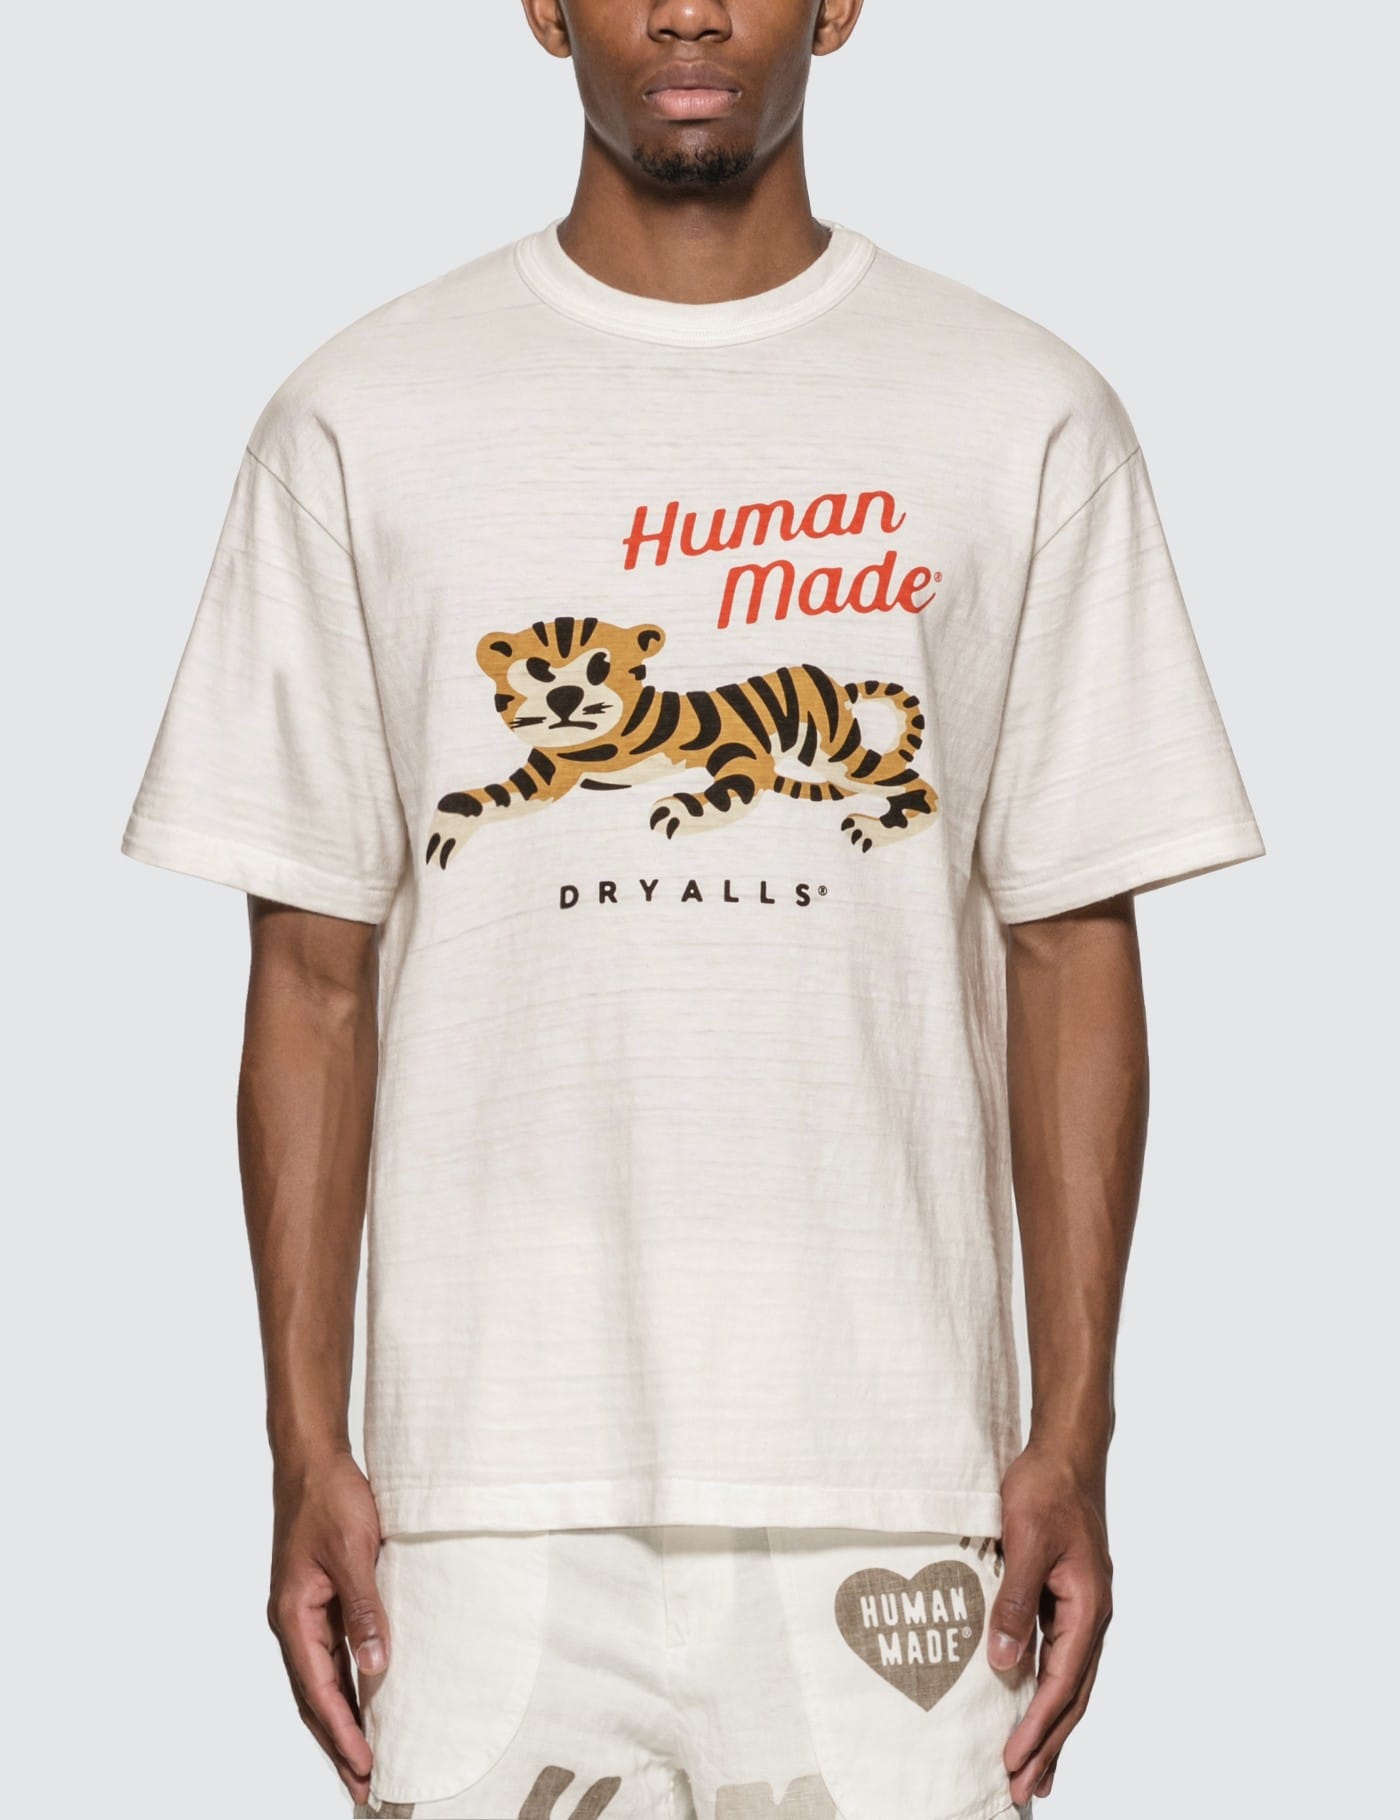 human made tiger shirt